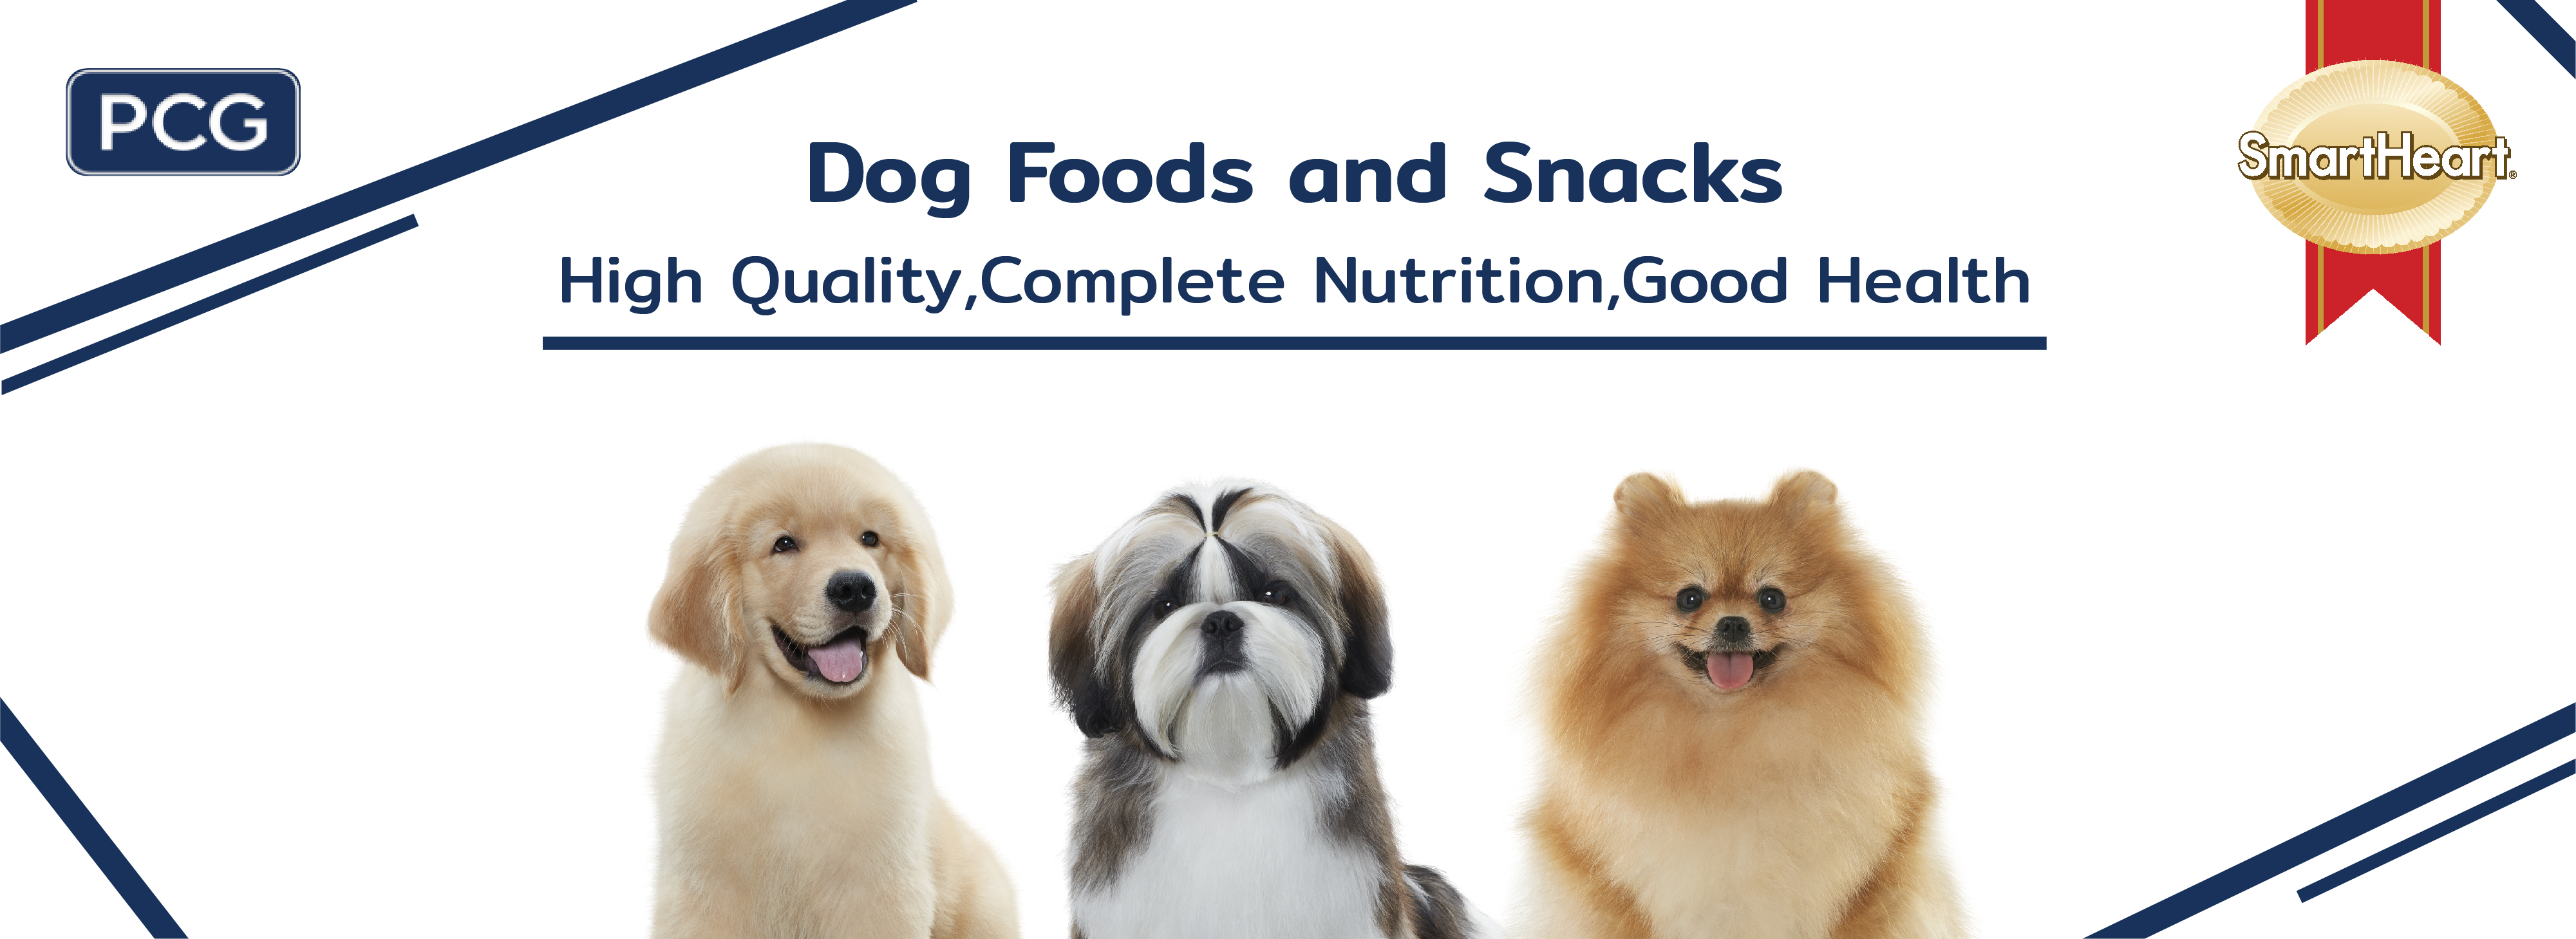 Dog food banner